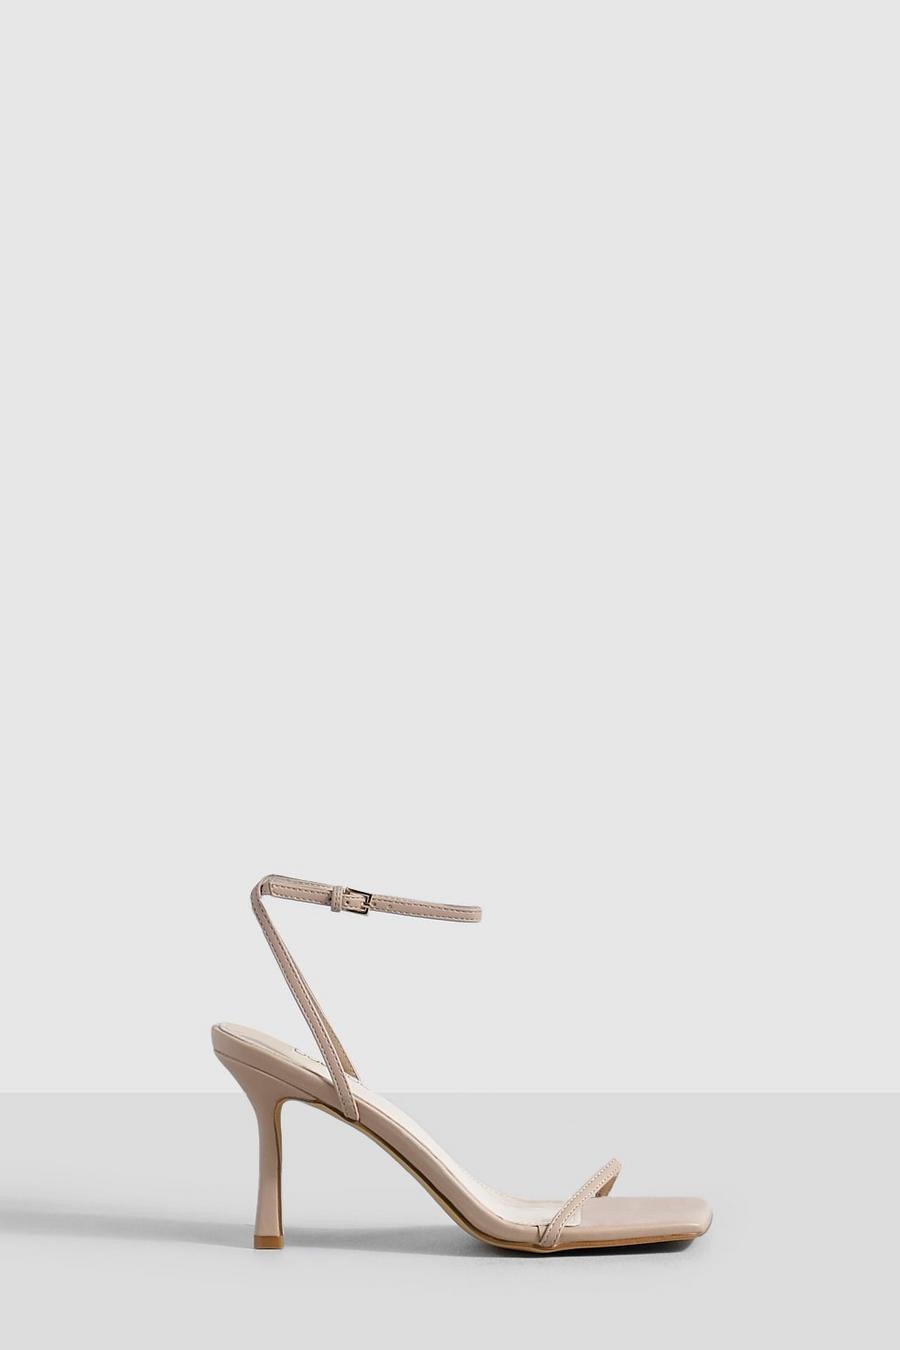 Zapatos minimalistas con puntera cuadrada y tira fina, Nude color carne